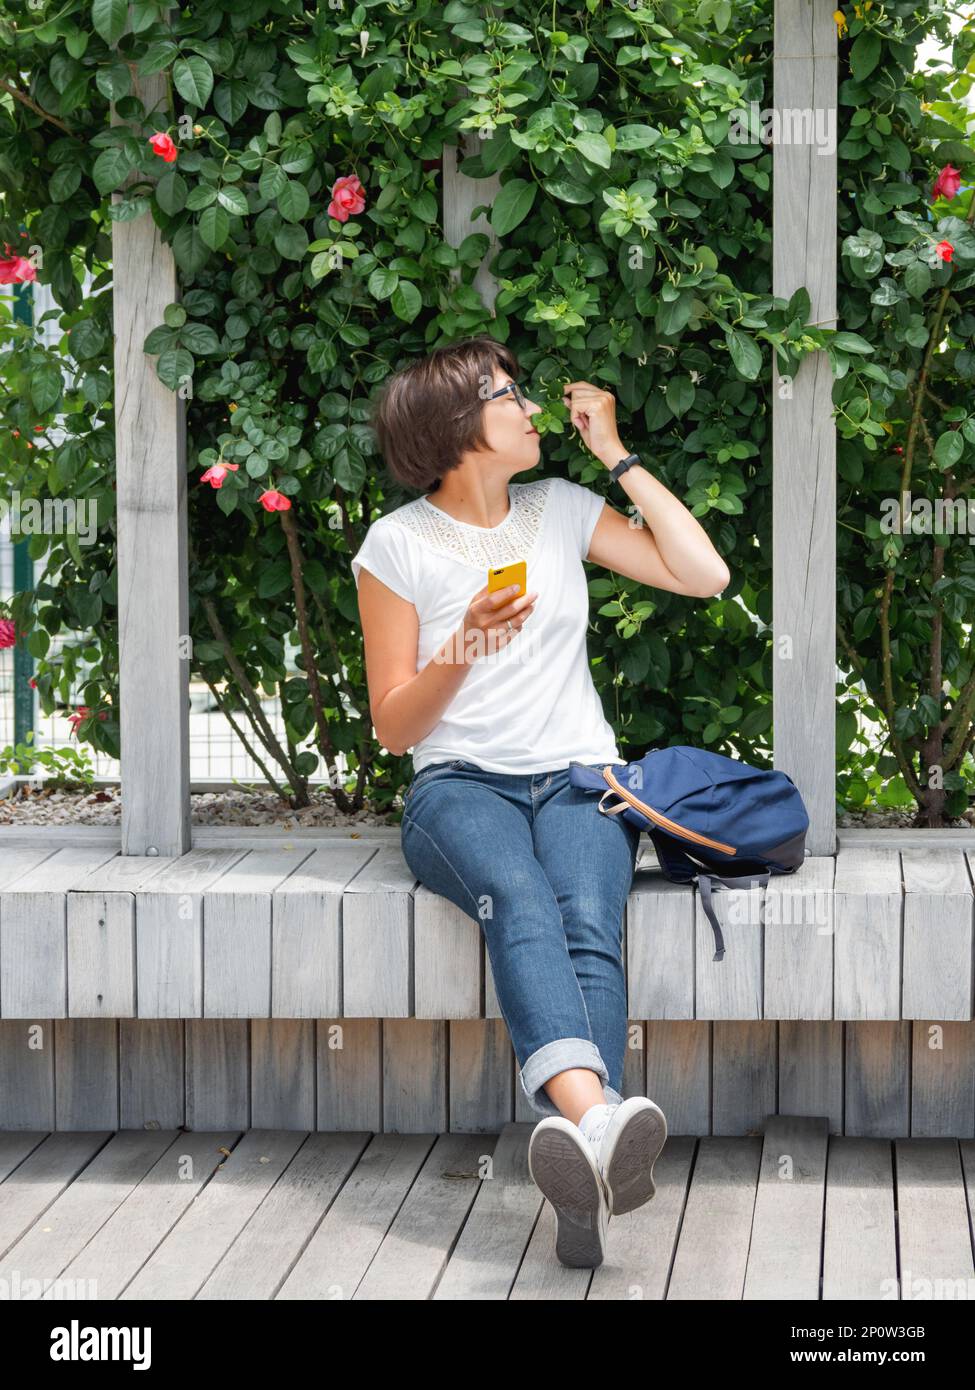 Die Frau schnüffelt Spalier-Rosen. Pretty Woman sitzt mit Smartphone auf einer Holzbank im öffentlichen Park. Sommerliche Stimmung. Stockfoto